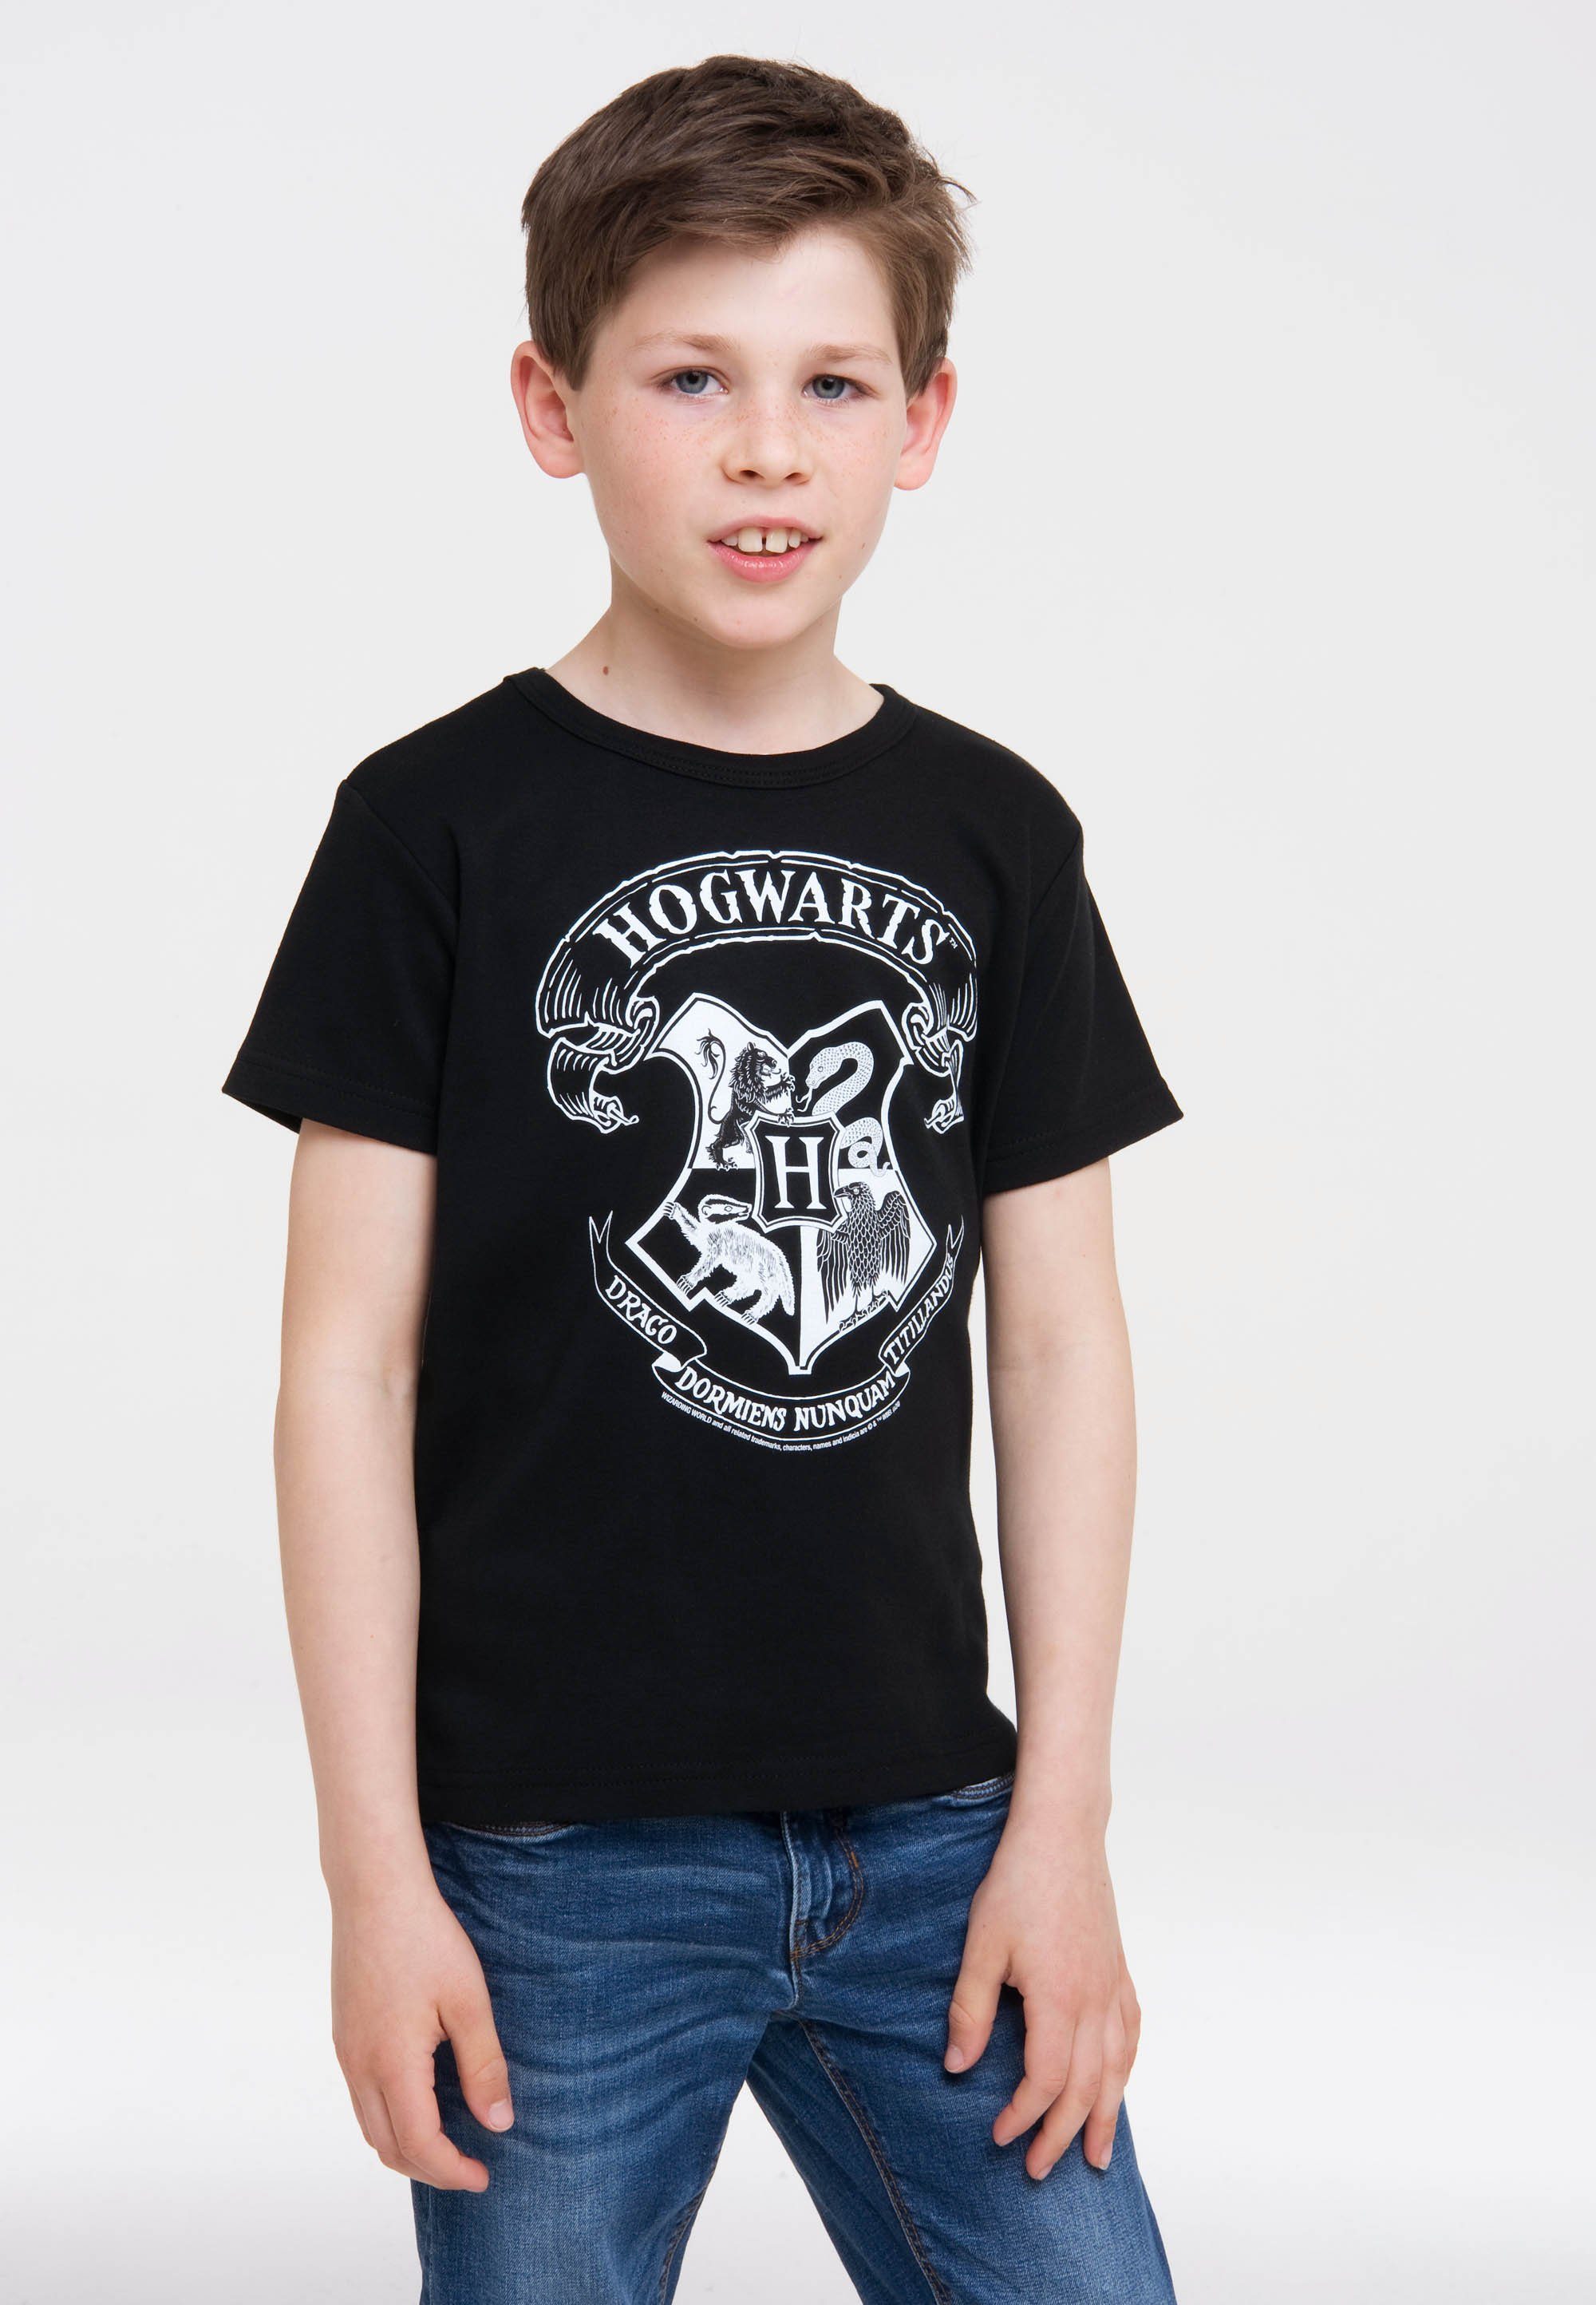 LOGOSHIRT T-Shirt Harry Potter Logo mit Originaldesign Hogwarts (Weiß) lizenziertem 